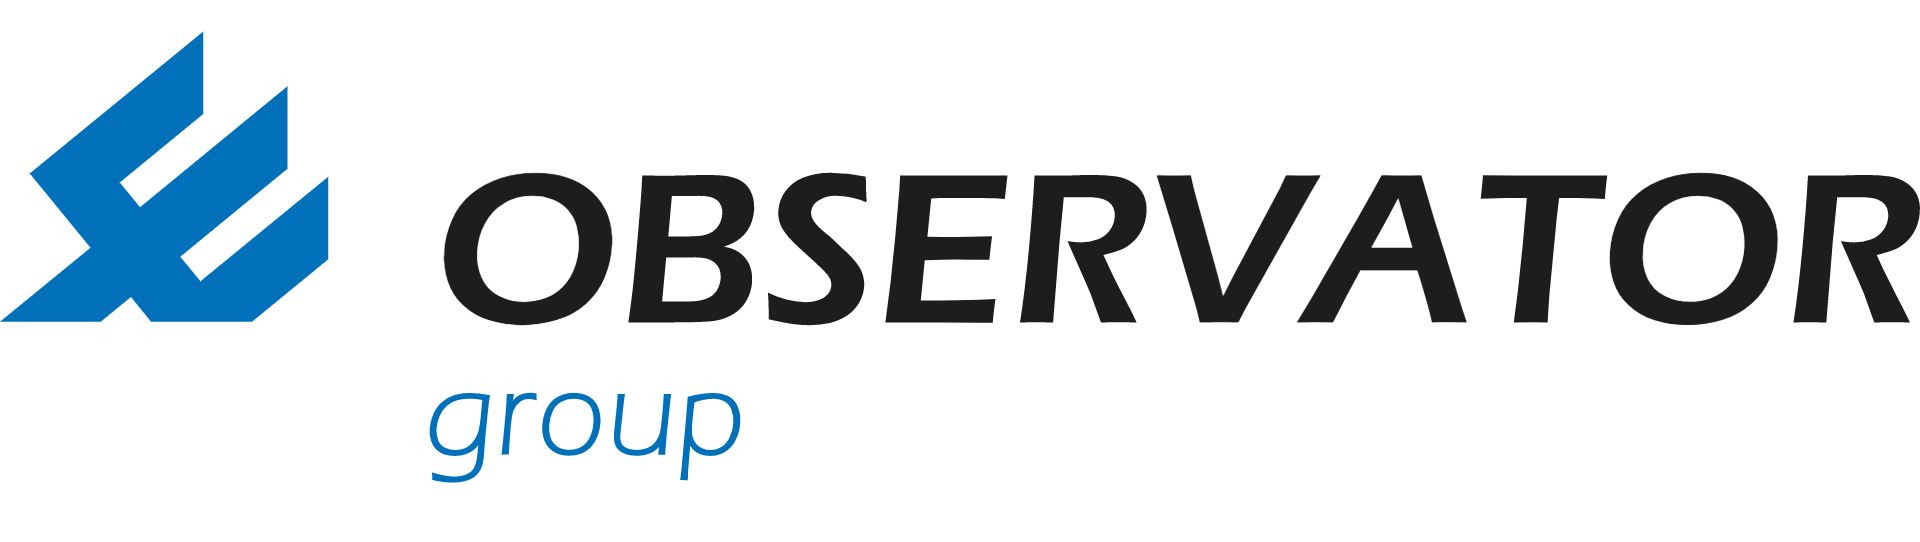 OBSERVATOR logo